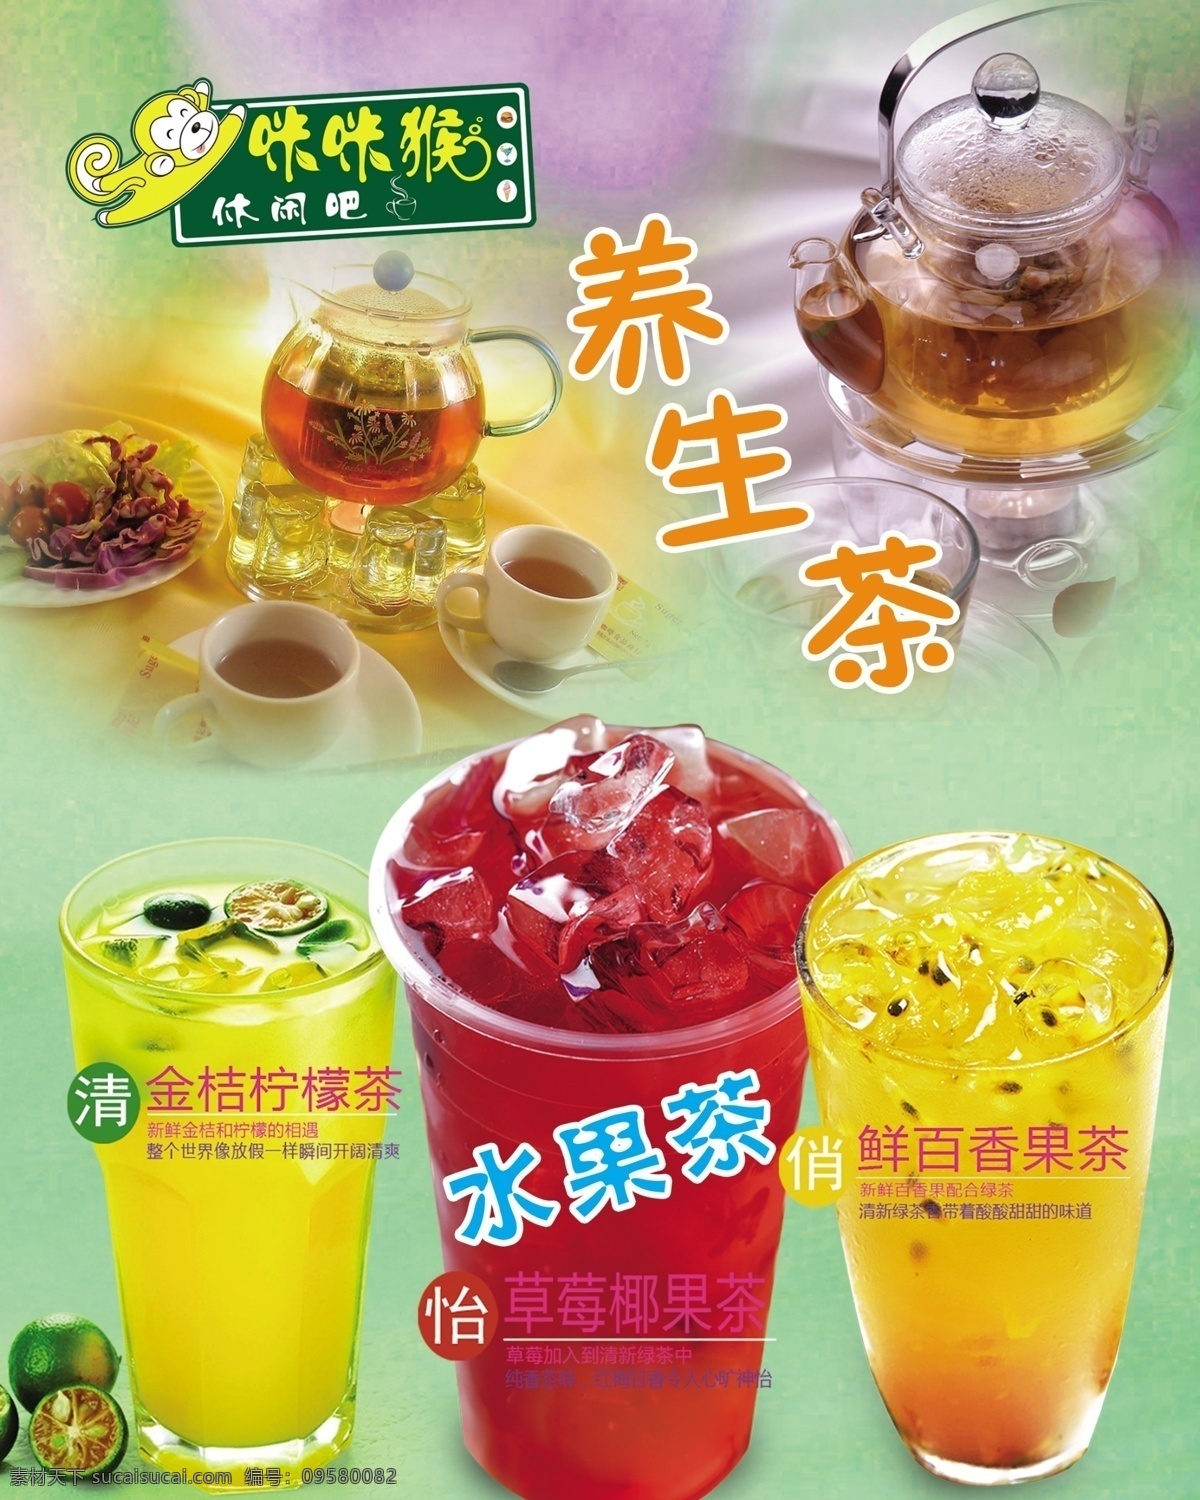 咪咪猴 养生茶 logo 夏日冷饮 饮料价格牌 ps设计